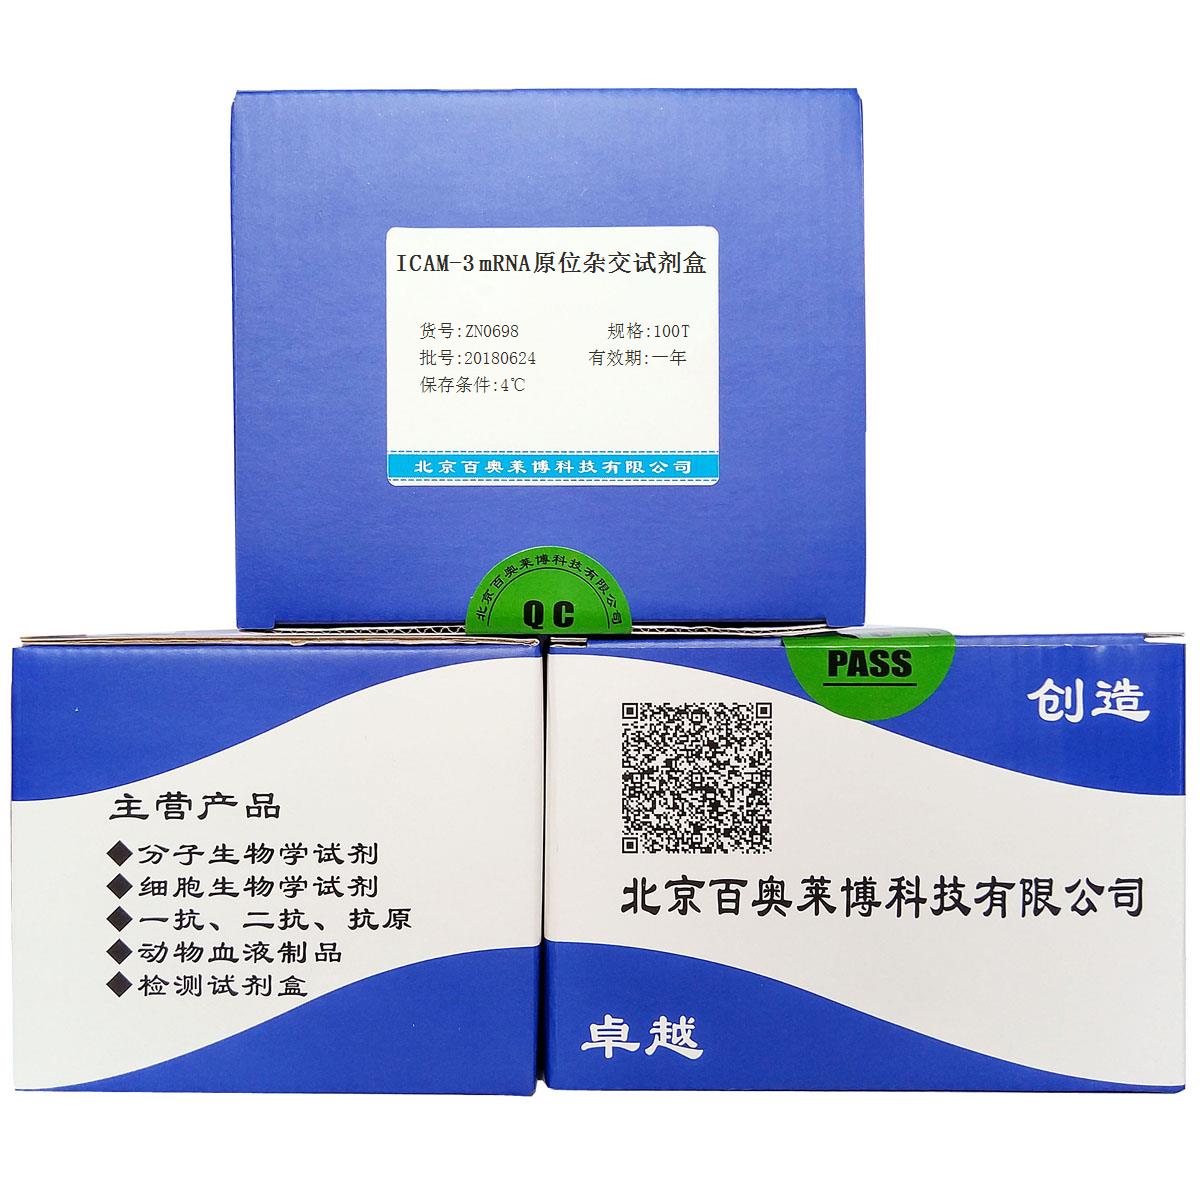 北京现货ICAM-3 mRNA原位杂交试剂盒批发